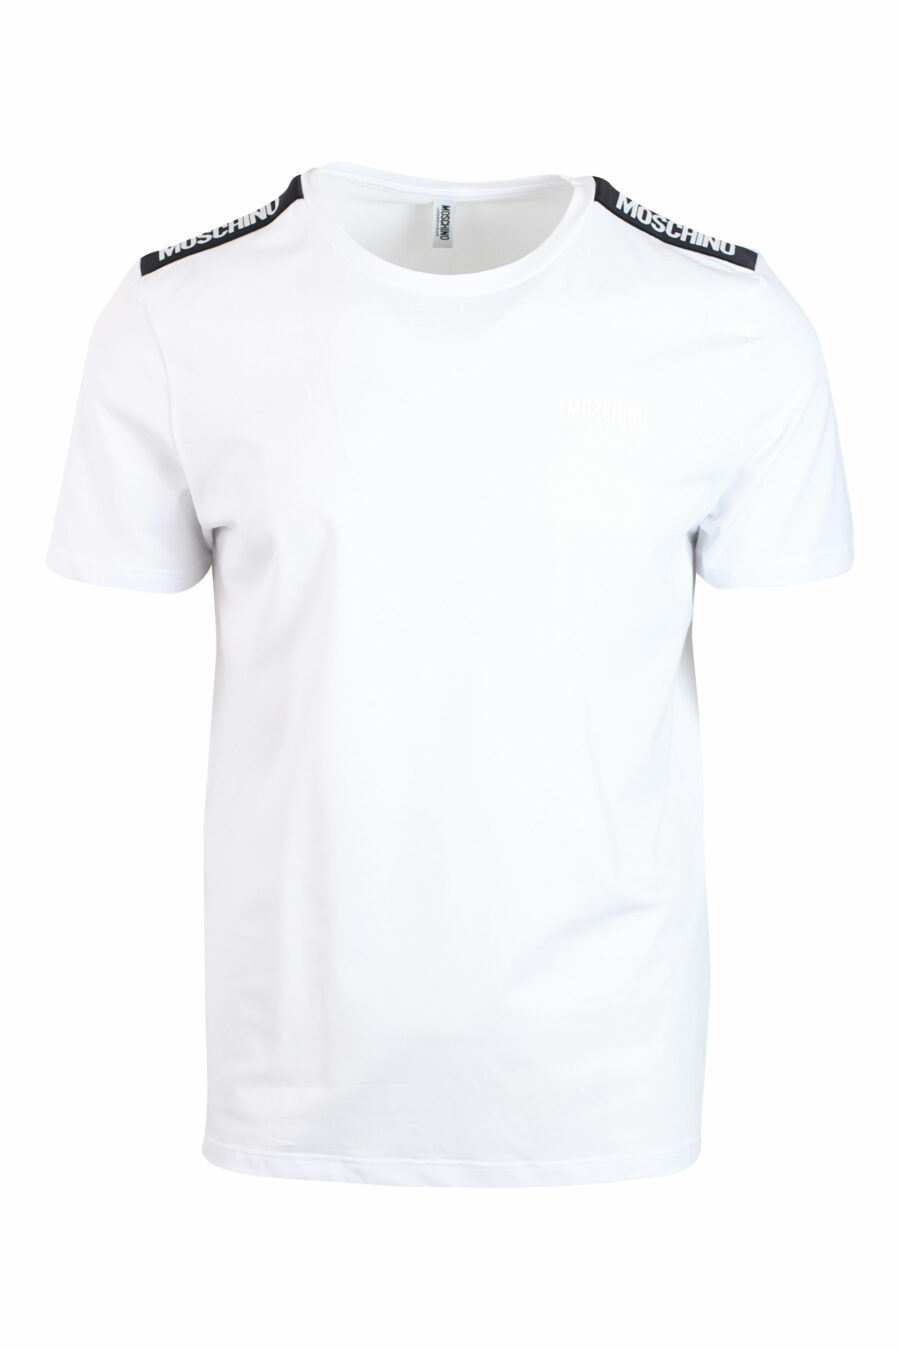 Pack de dos camisetas blancas con logo en banda en hombros - IMG 0131